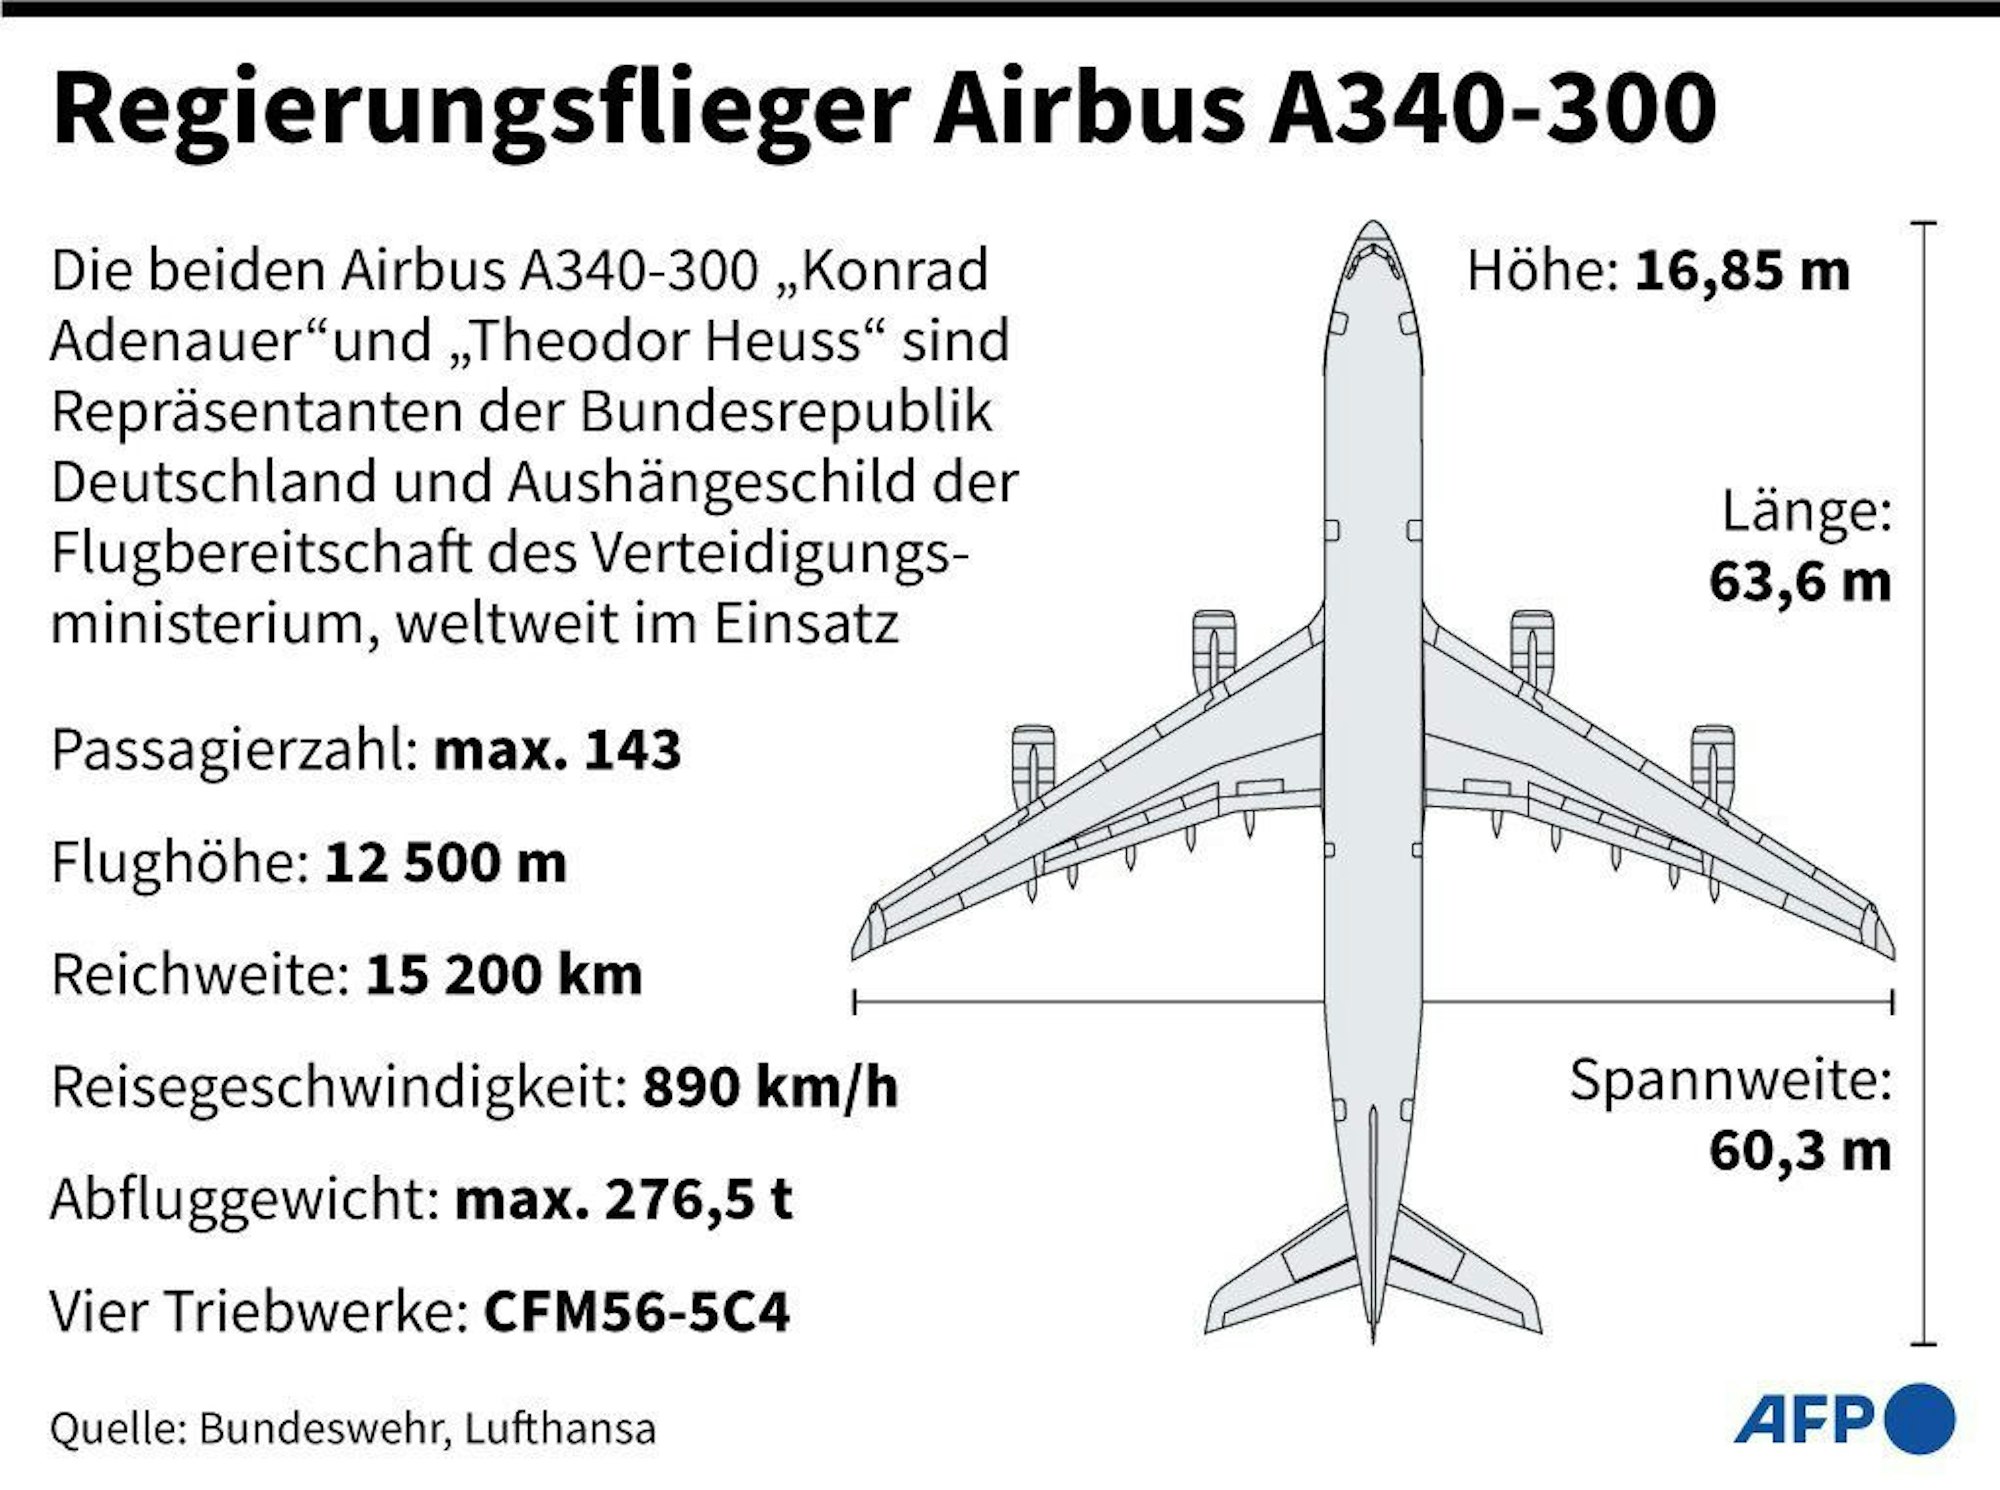 Grafik zum Regierungsflieger des Typs A340.